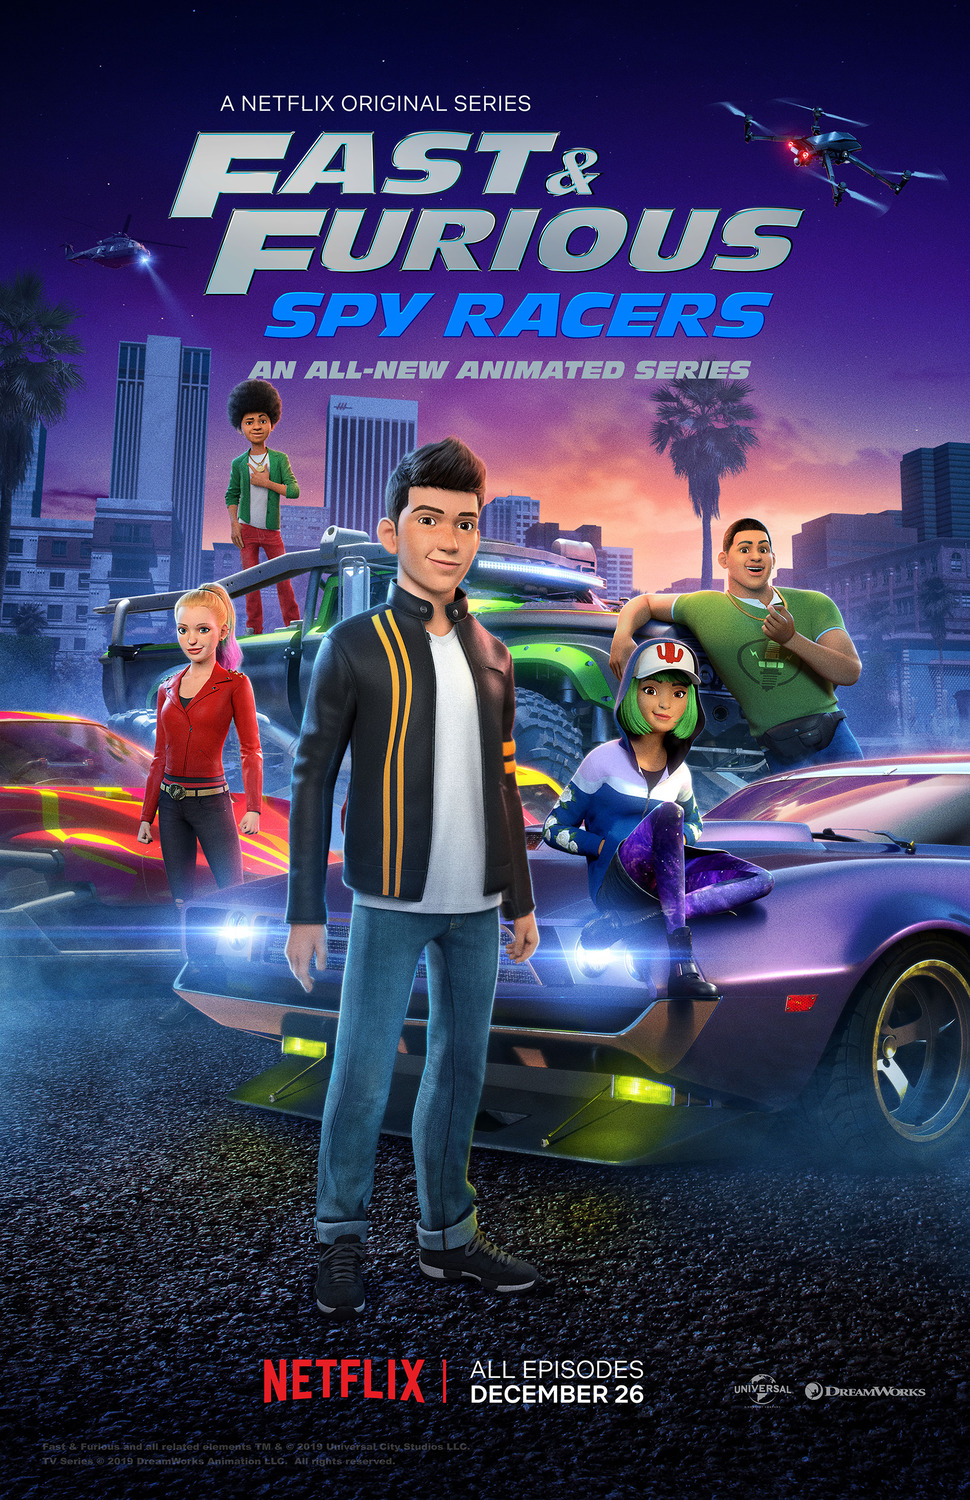 ดูหนังออนไลน์ฟรี Fast & Furious Spy Racers Season 6 EP.5 เร็วแรงทะลุนรก ซิ่งสยบโลก ซีซั่น 6 ตอนที่ 5